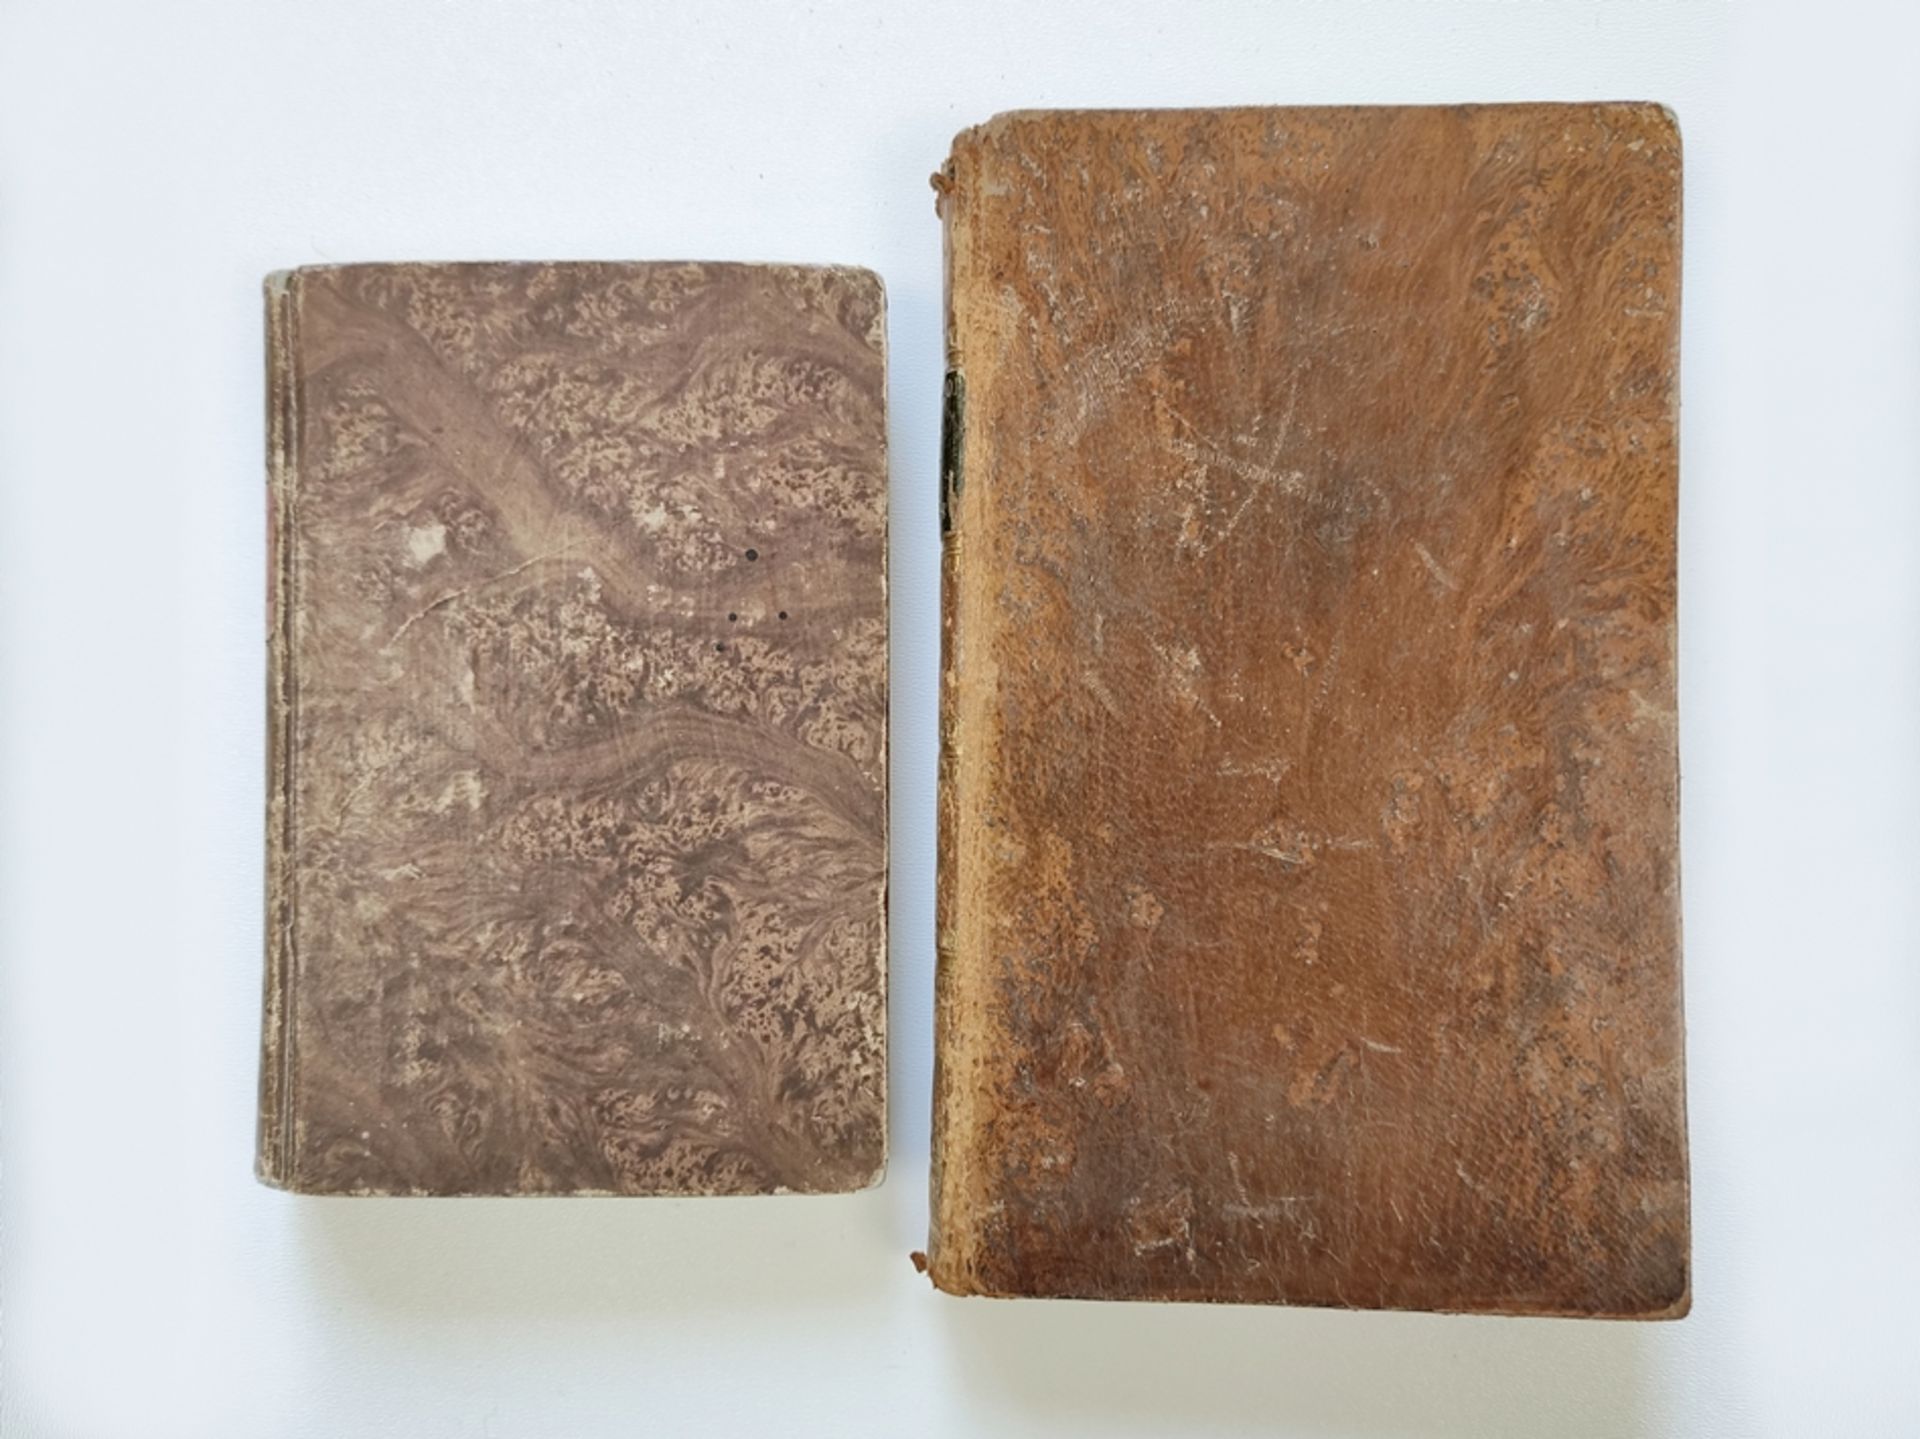 Two volumes of the "Little Lent" by Jean-Baptiste Massillon/"Petit Careme de Massillon, eveque de C - Image 3 of 3